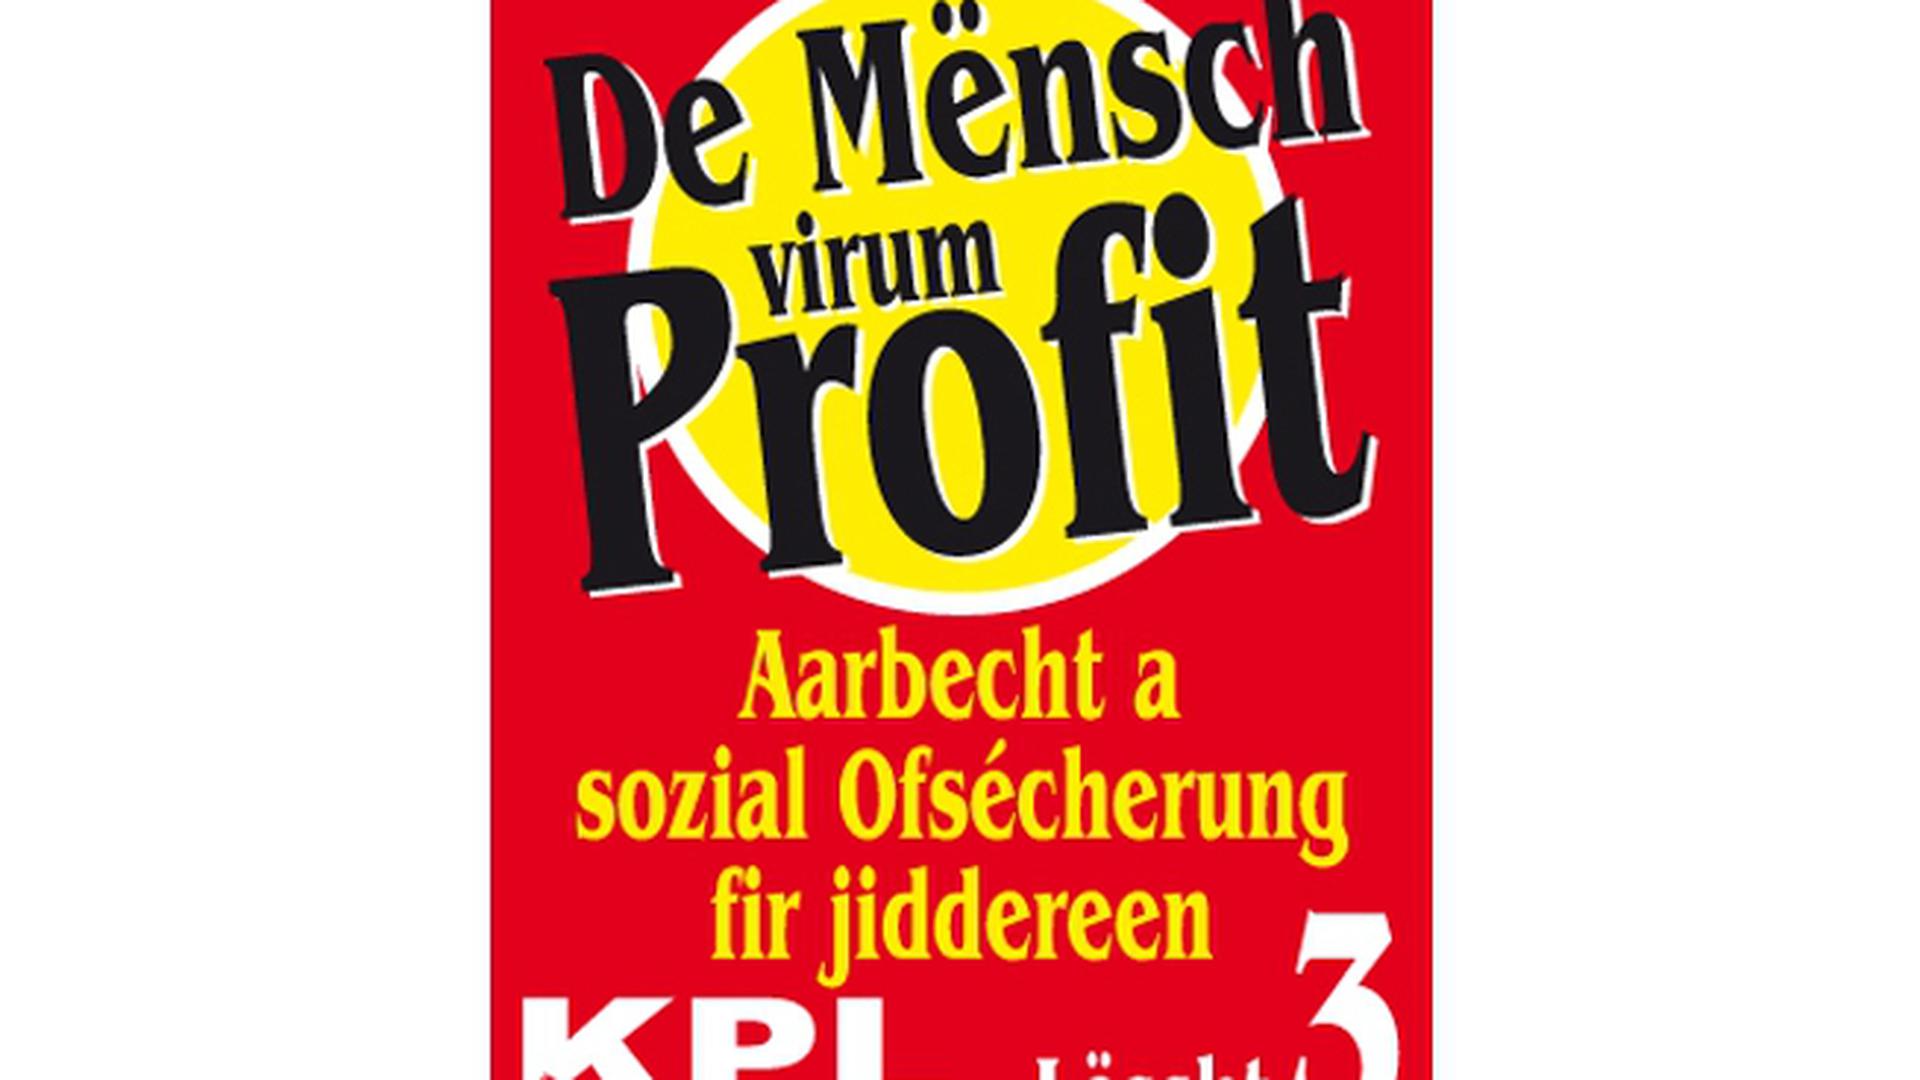 O Partido Comunista luxemburguês (KPL) defende valores sociais, e não poupa críticas ao sistema capitalista e à degradação dos direitos dos trabalhadores. Neste cartaz, lê-se: "As pessoas antes do lucro" e "Trabalho e Segurança Social para todos".